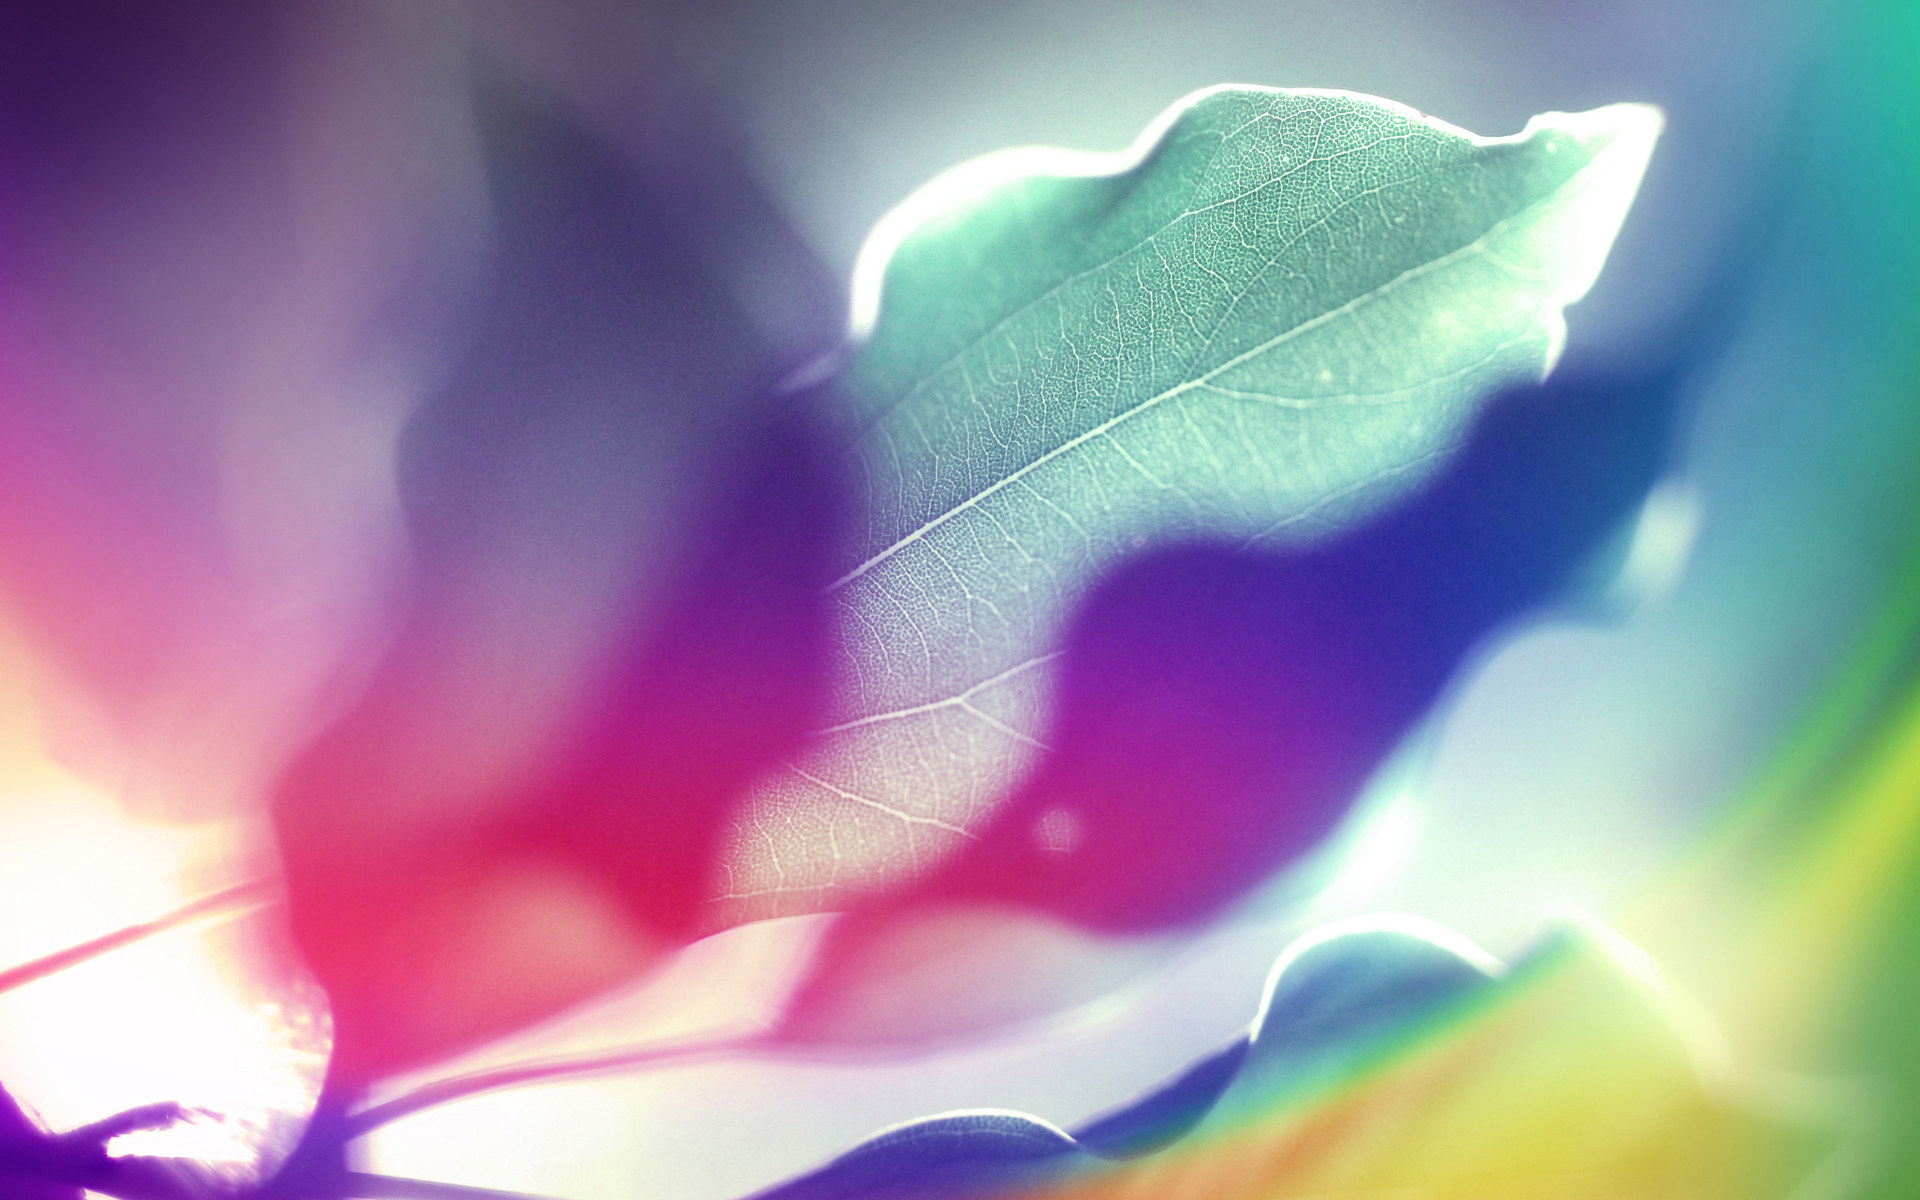 壁纸1920x1200抽象背景 彩虹之色 阳光下的叶子 视觉色彩背景壁纸 抽象背景 彩虹之色壁纸 抽象背景 彩虹之色图片 抽象背景 彩虹之色素材 插画壁纸 插画图库 插画图片素材桌面壁纸